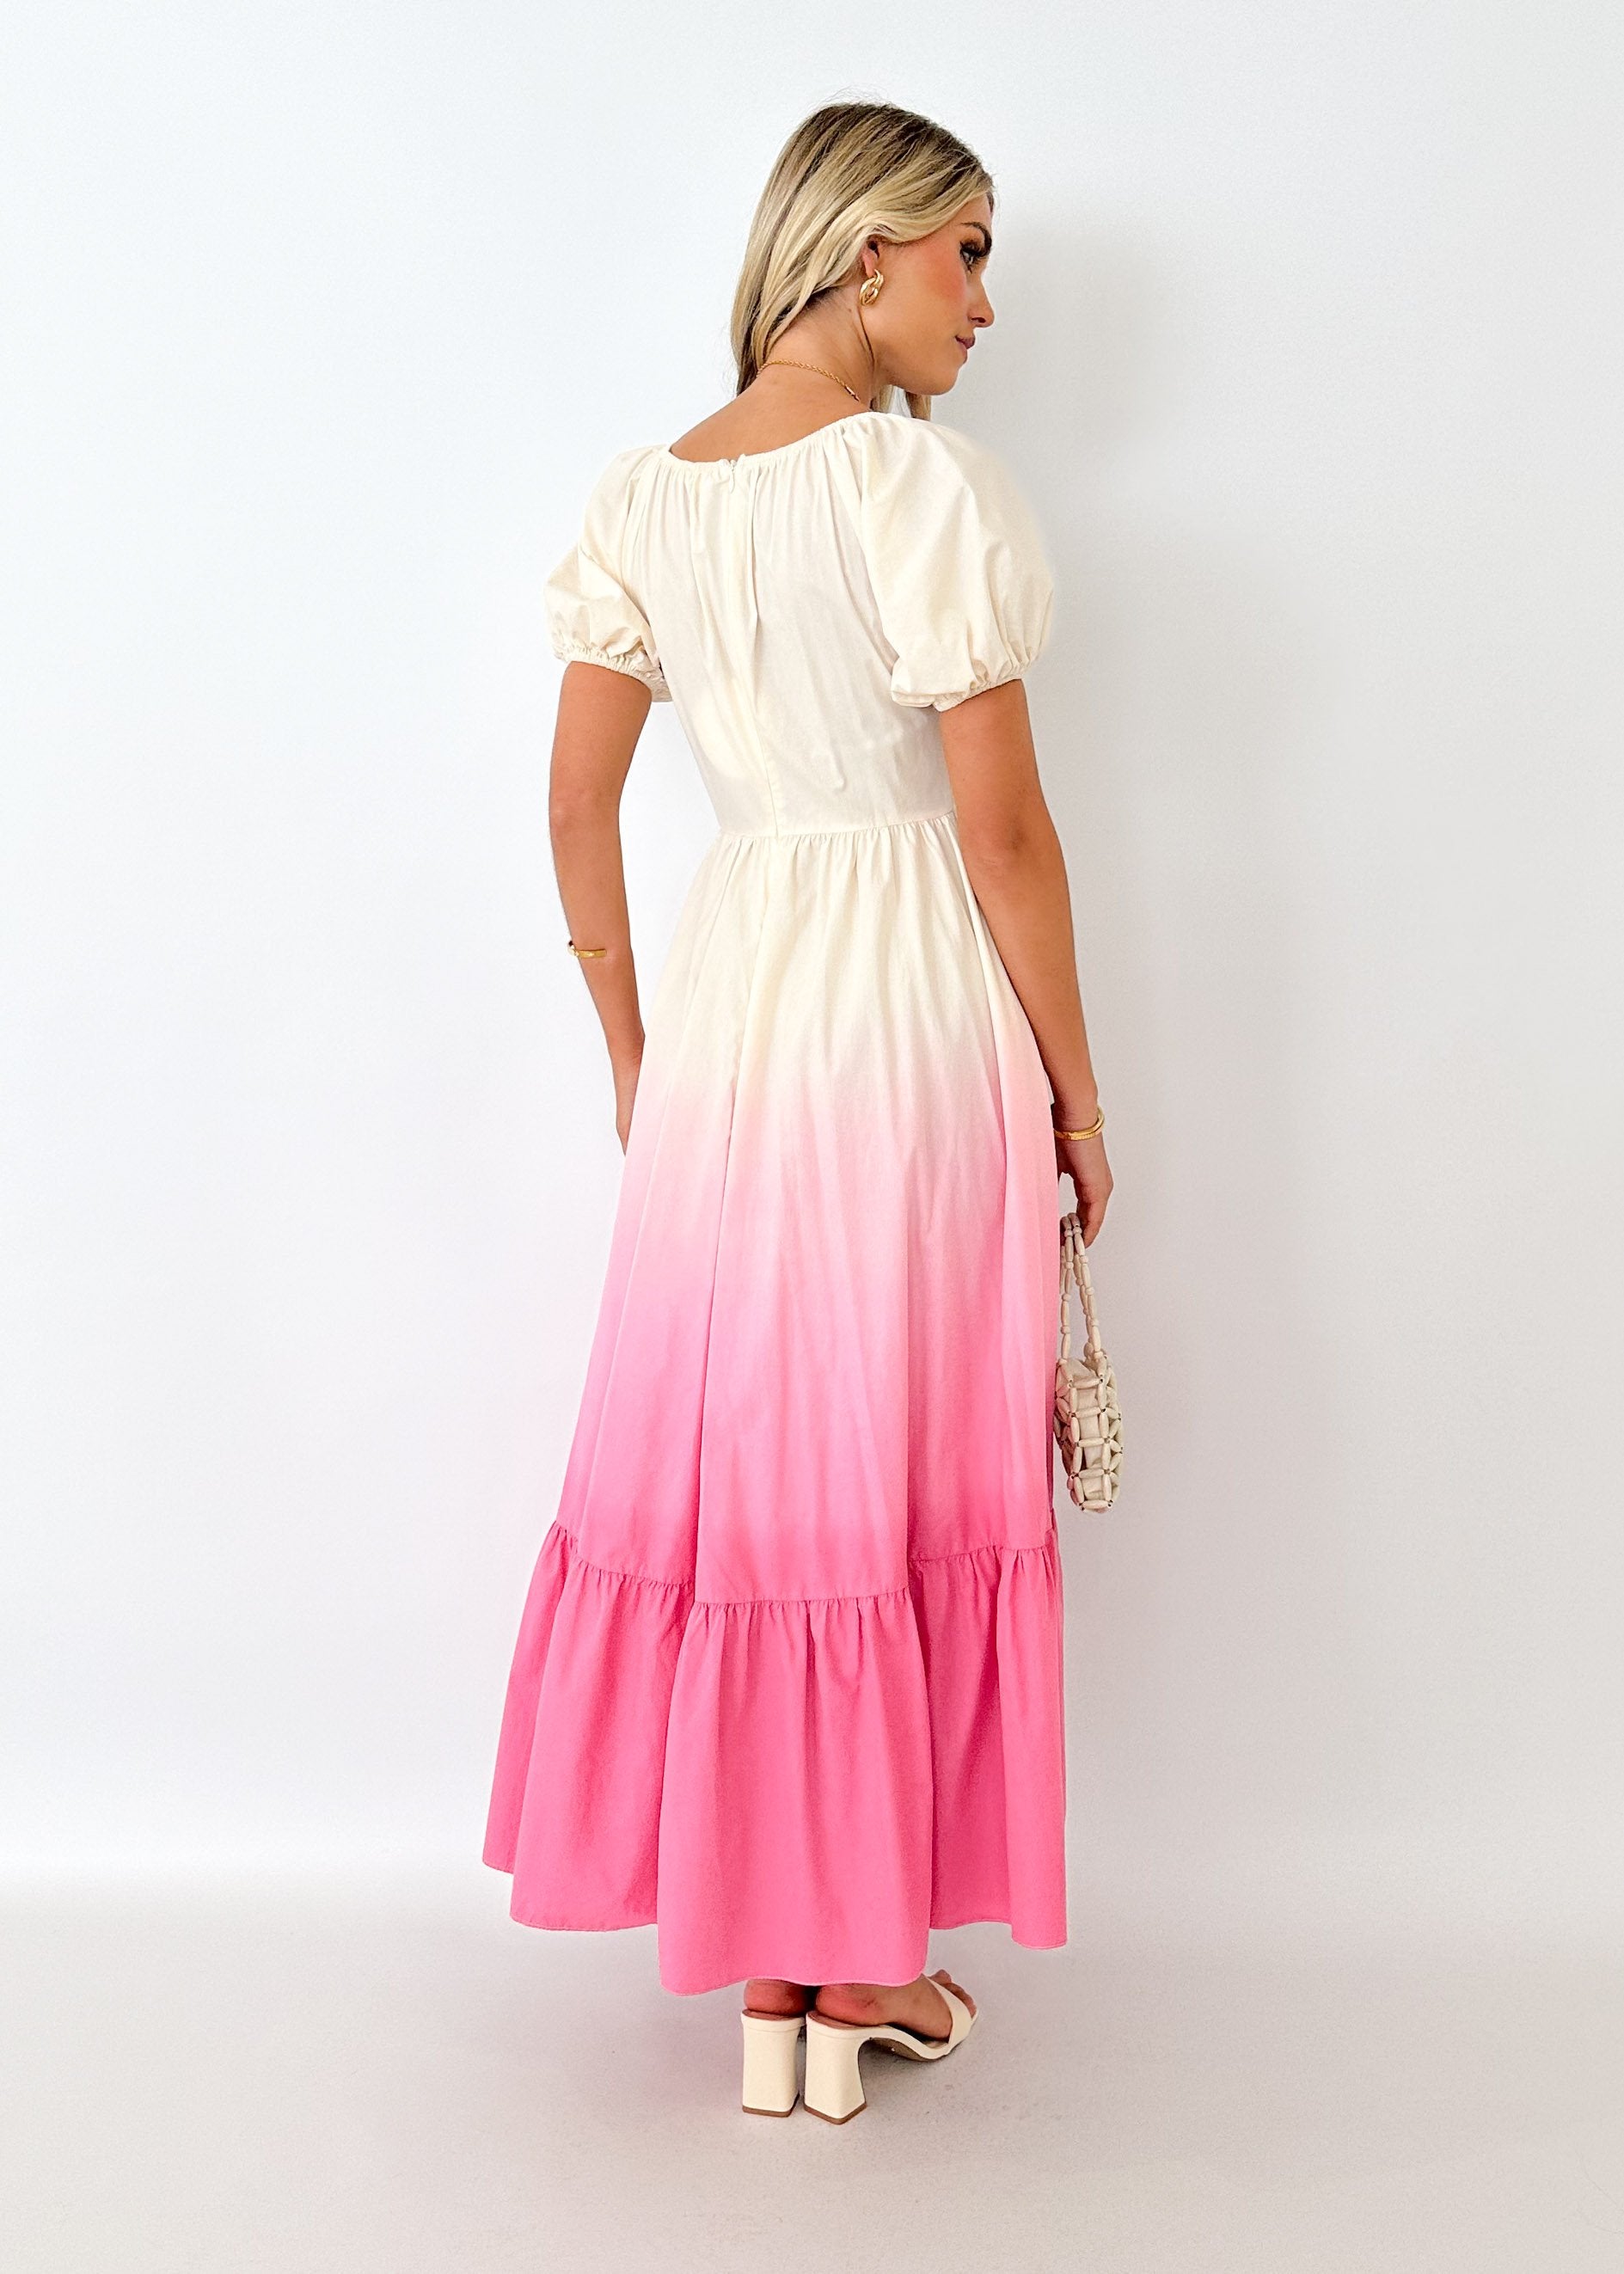 Medea Maxi Dress - Pink Ombre